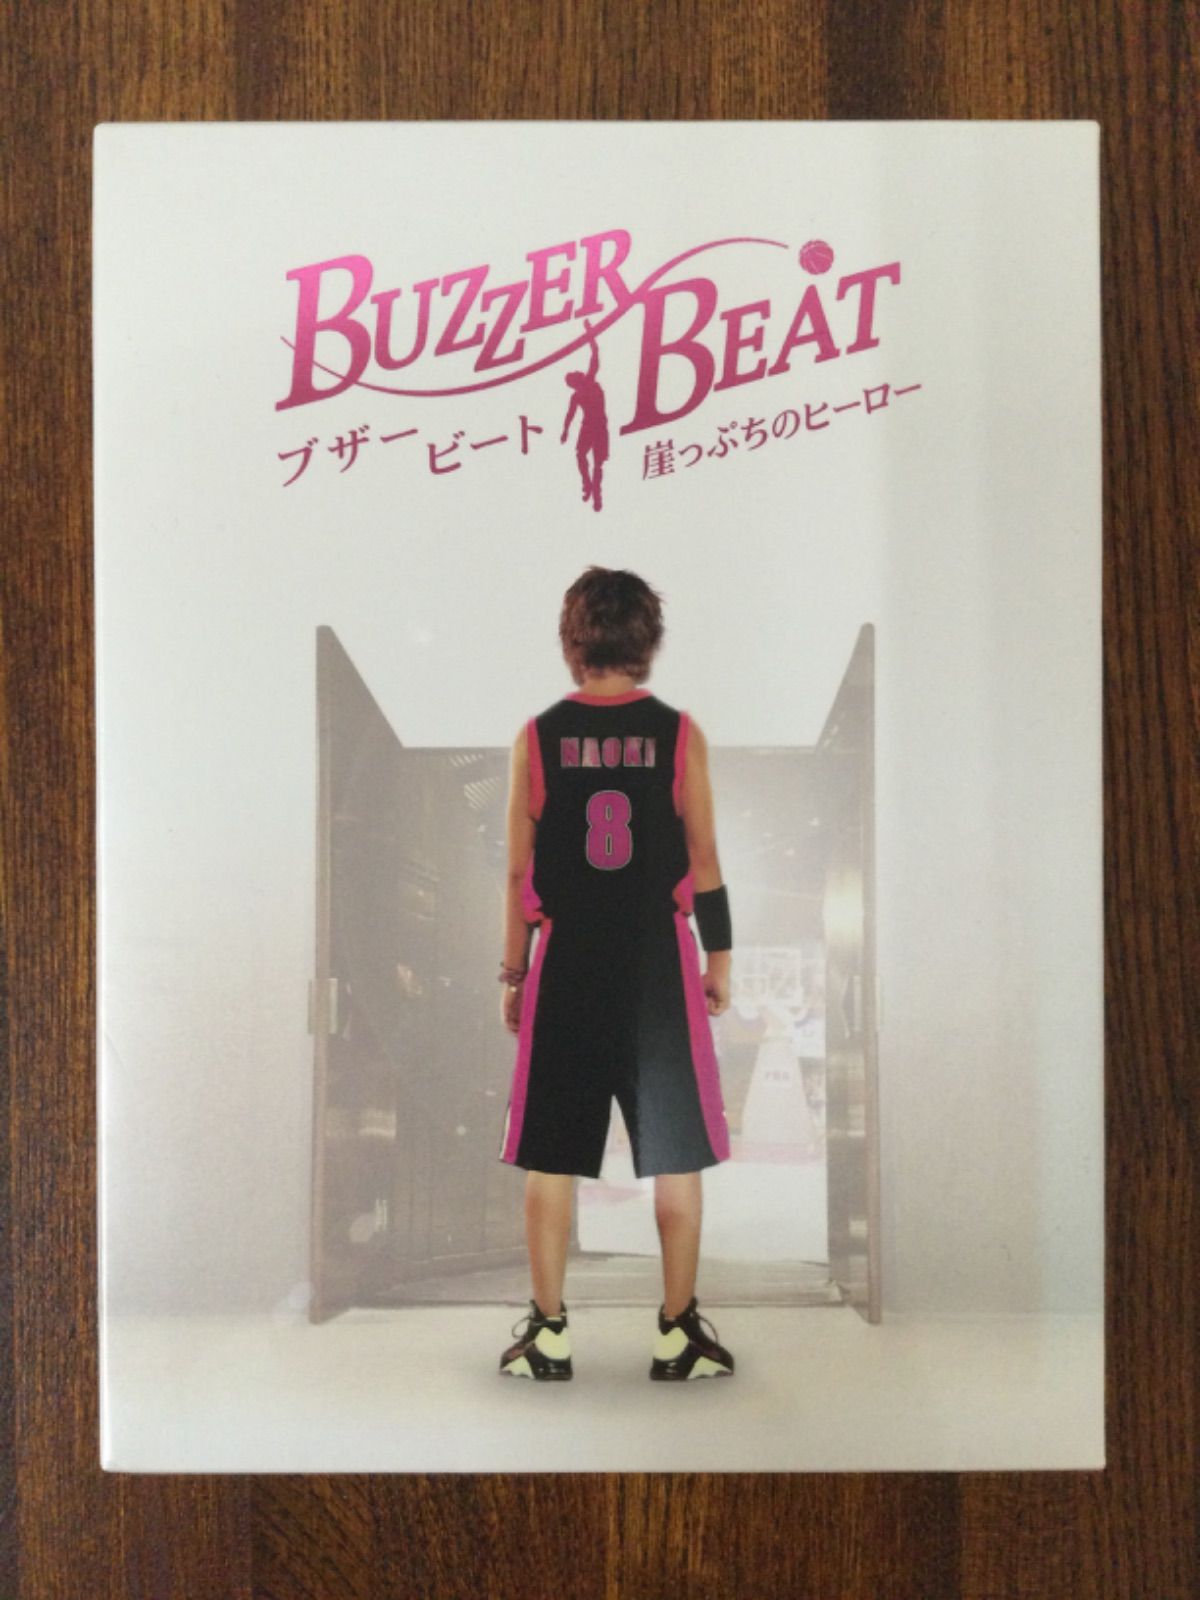 Buzzer Beat ブザービート 崖っぷちのヒーロー DVDボックス - メルカリ